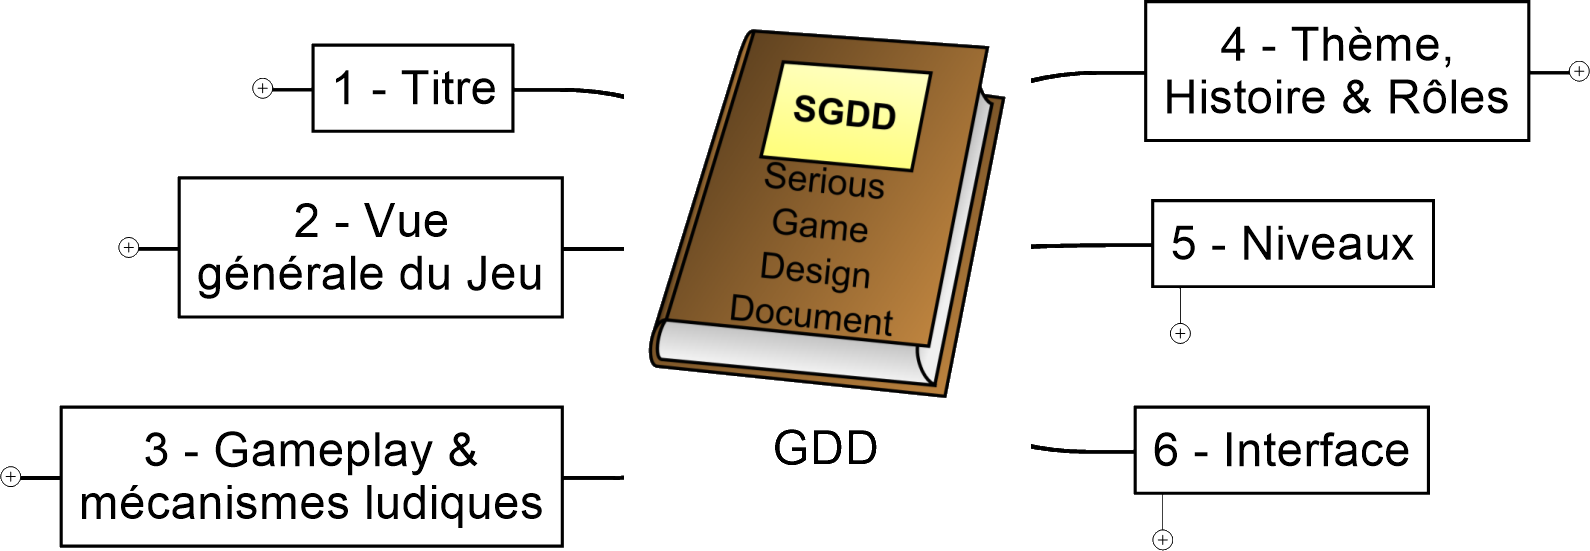 Lire la suite à propos de l’article Le Serious Game Design Document – SGDD